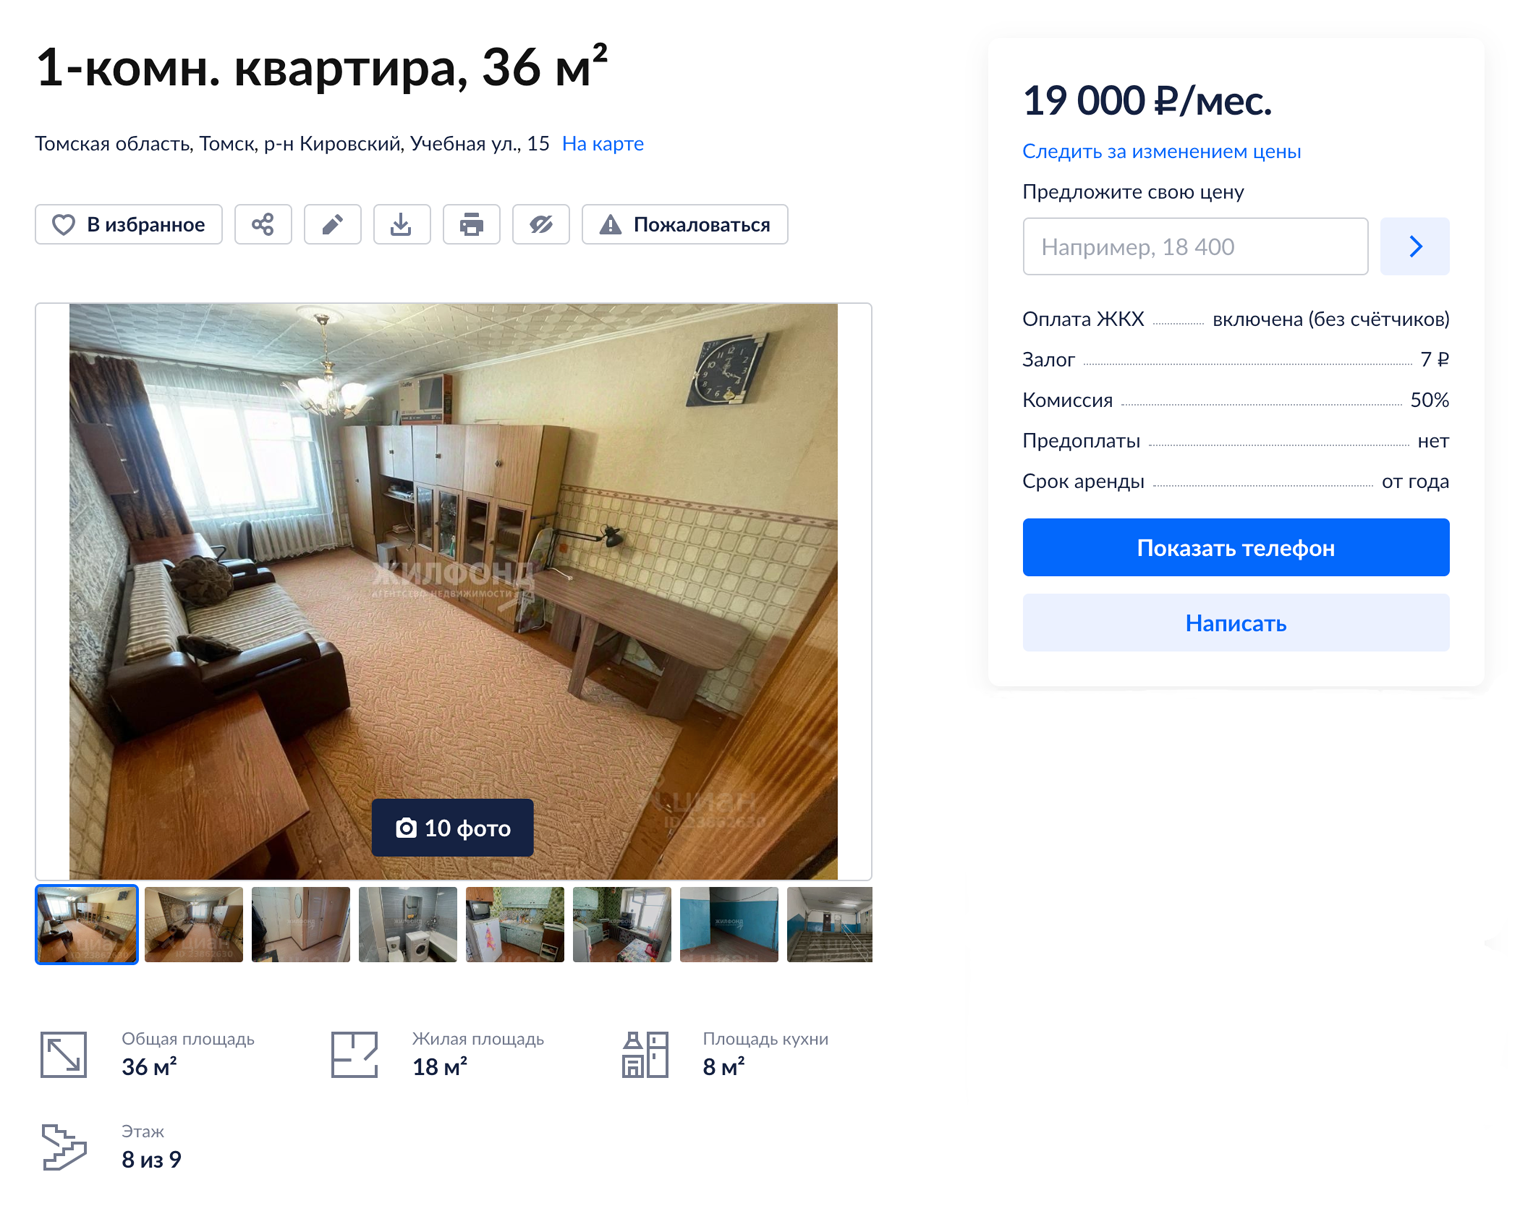 Типичное предложение по аренде. Источник: tomsk.cian.ru